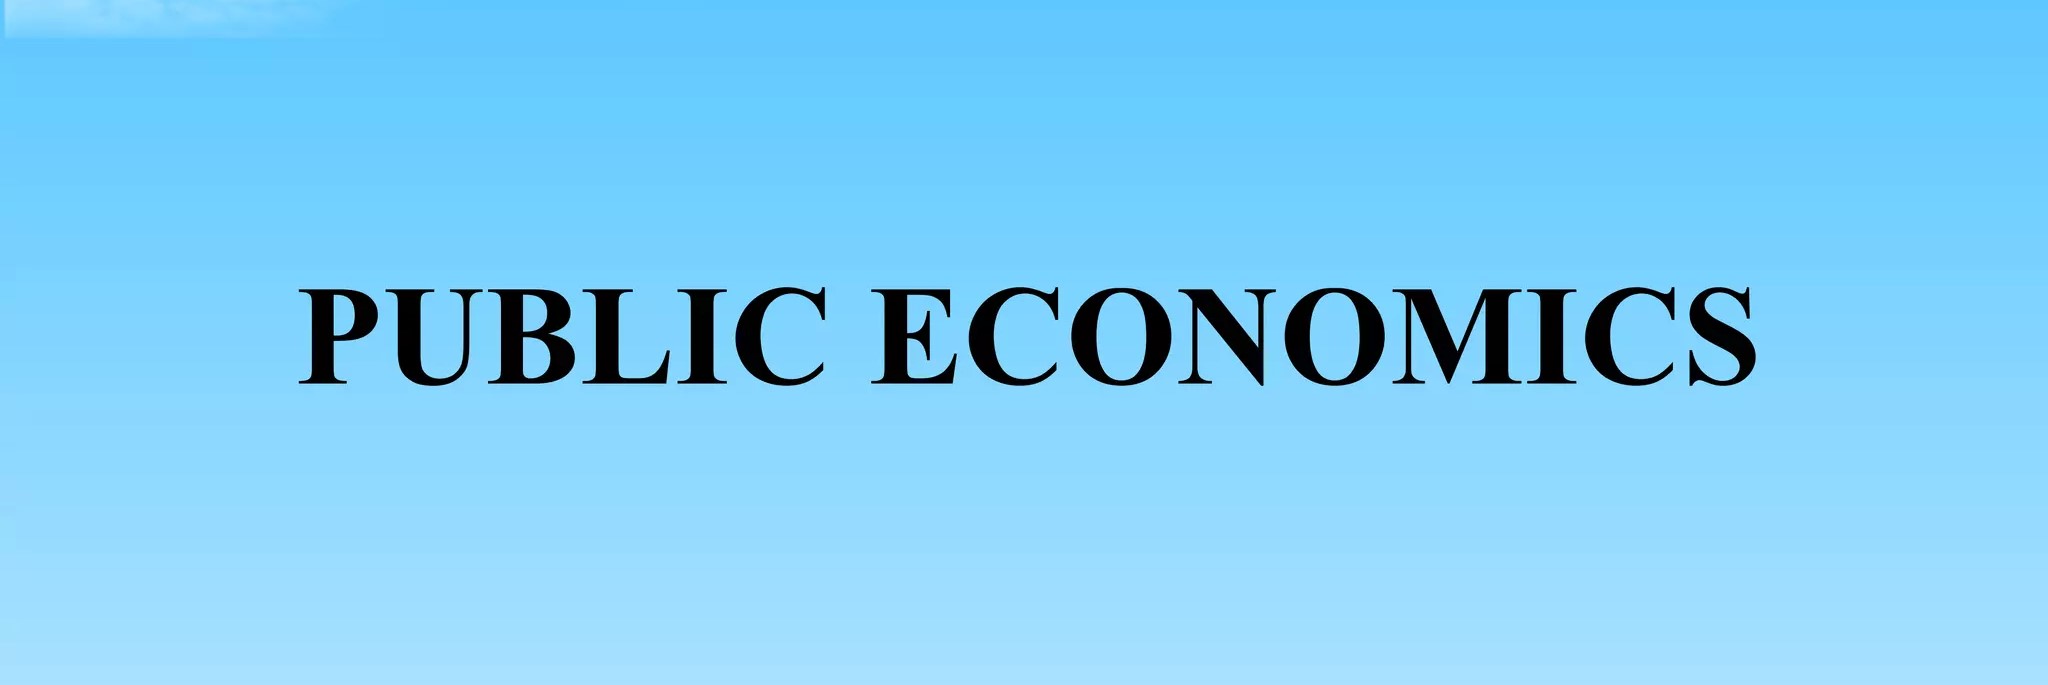 PUBLIC ECONOMICS I